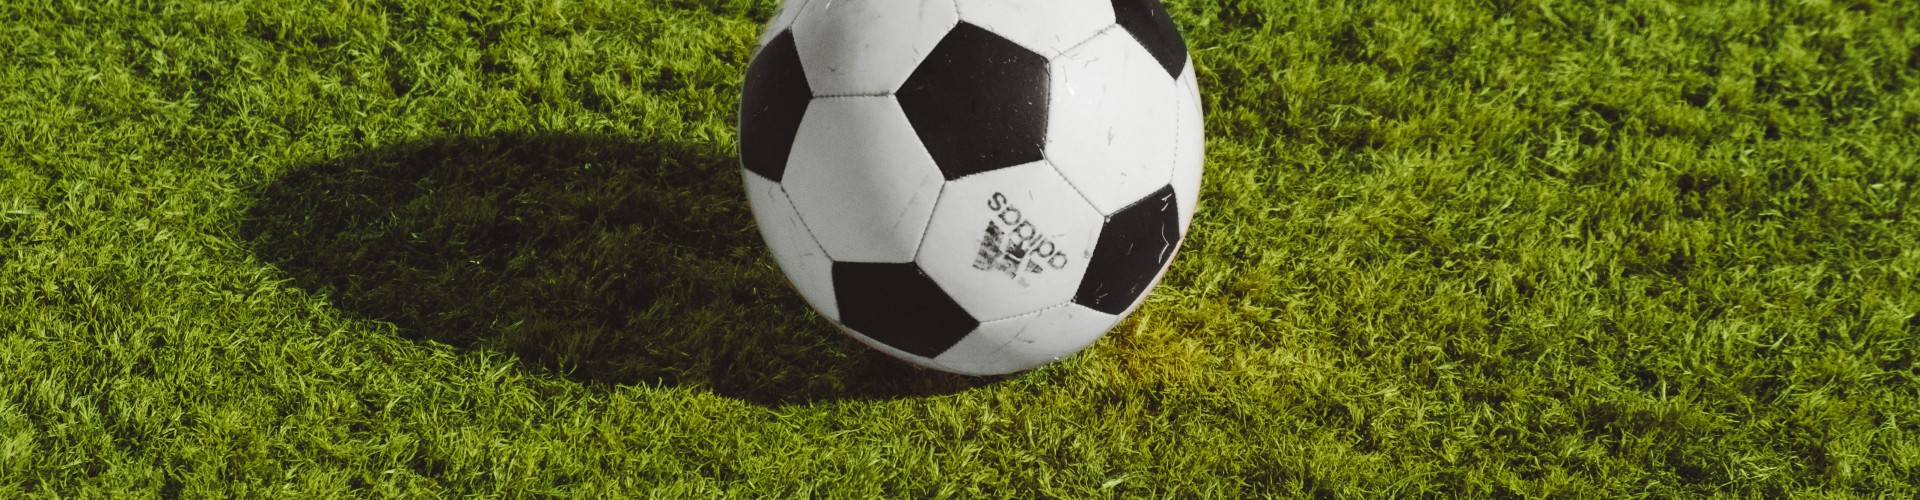 A football on green grass